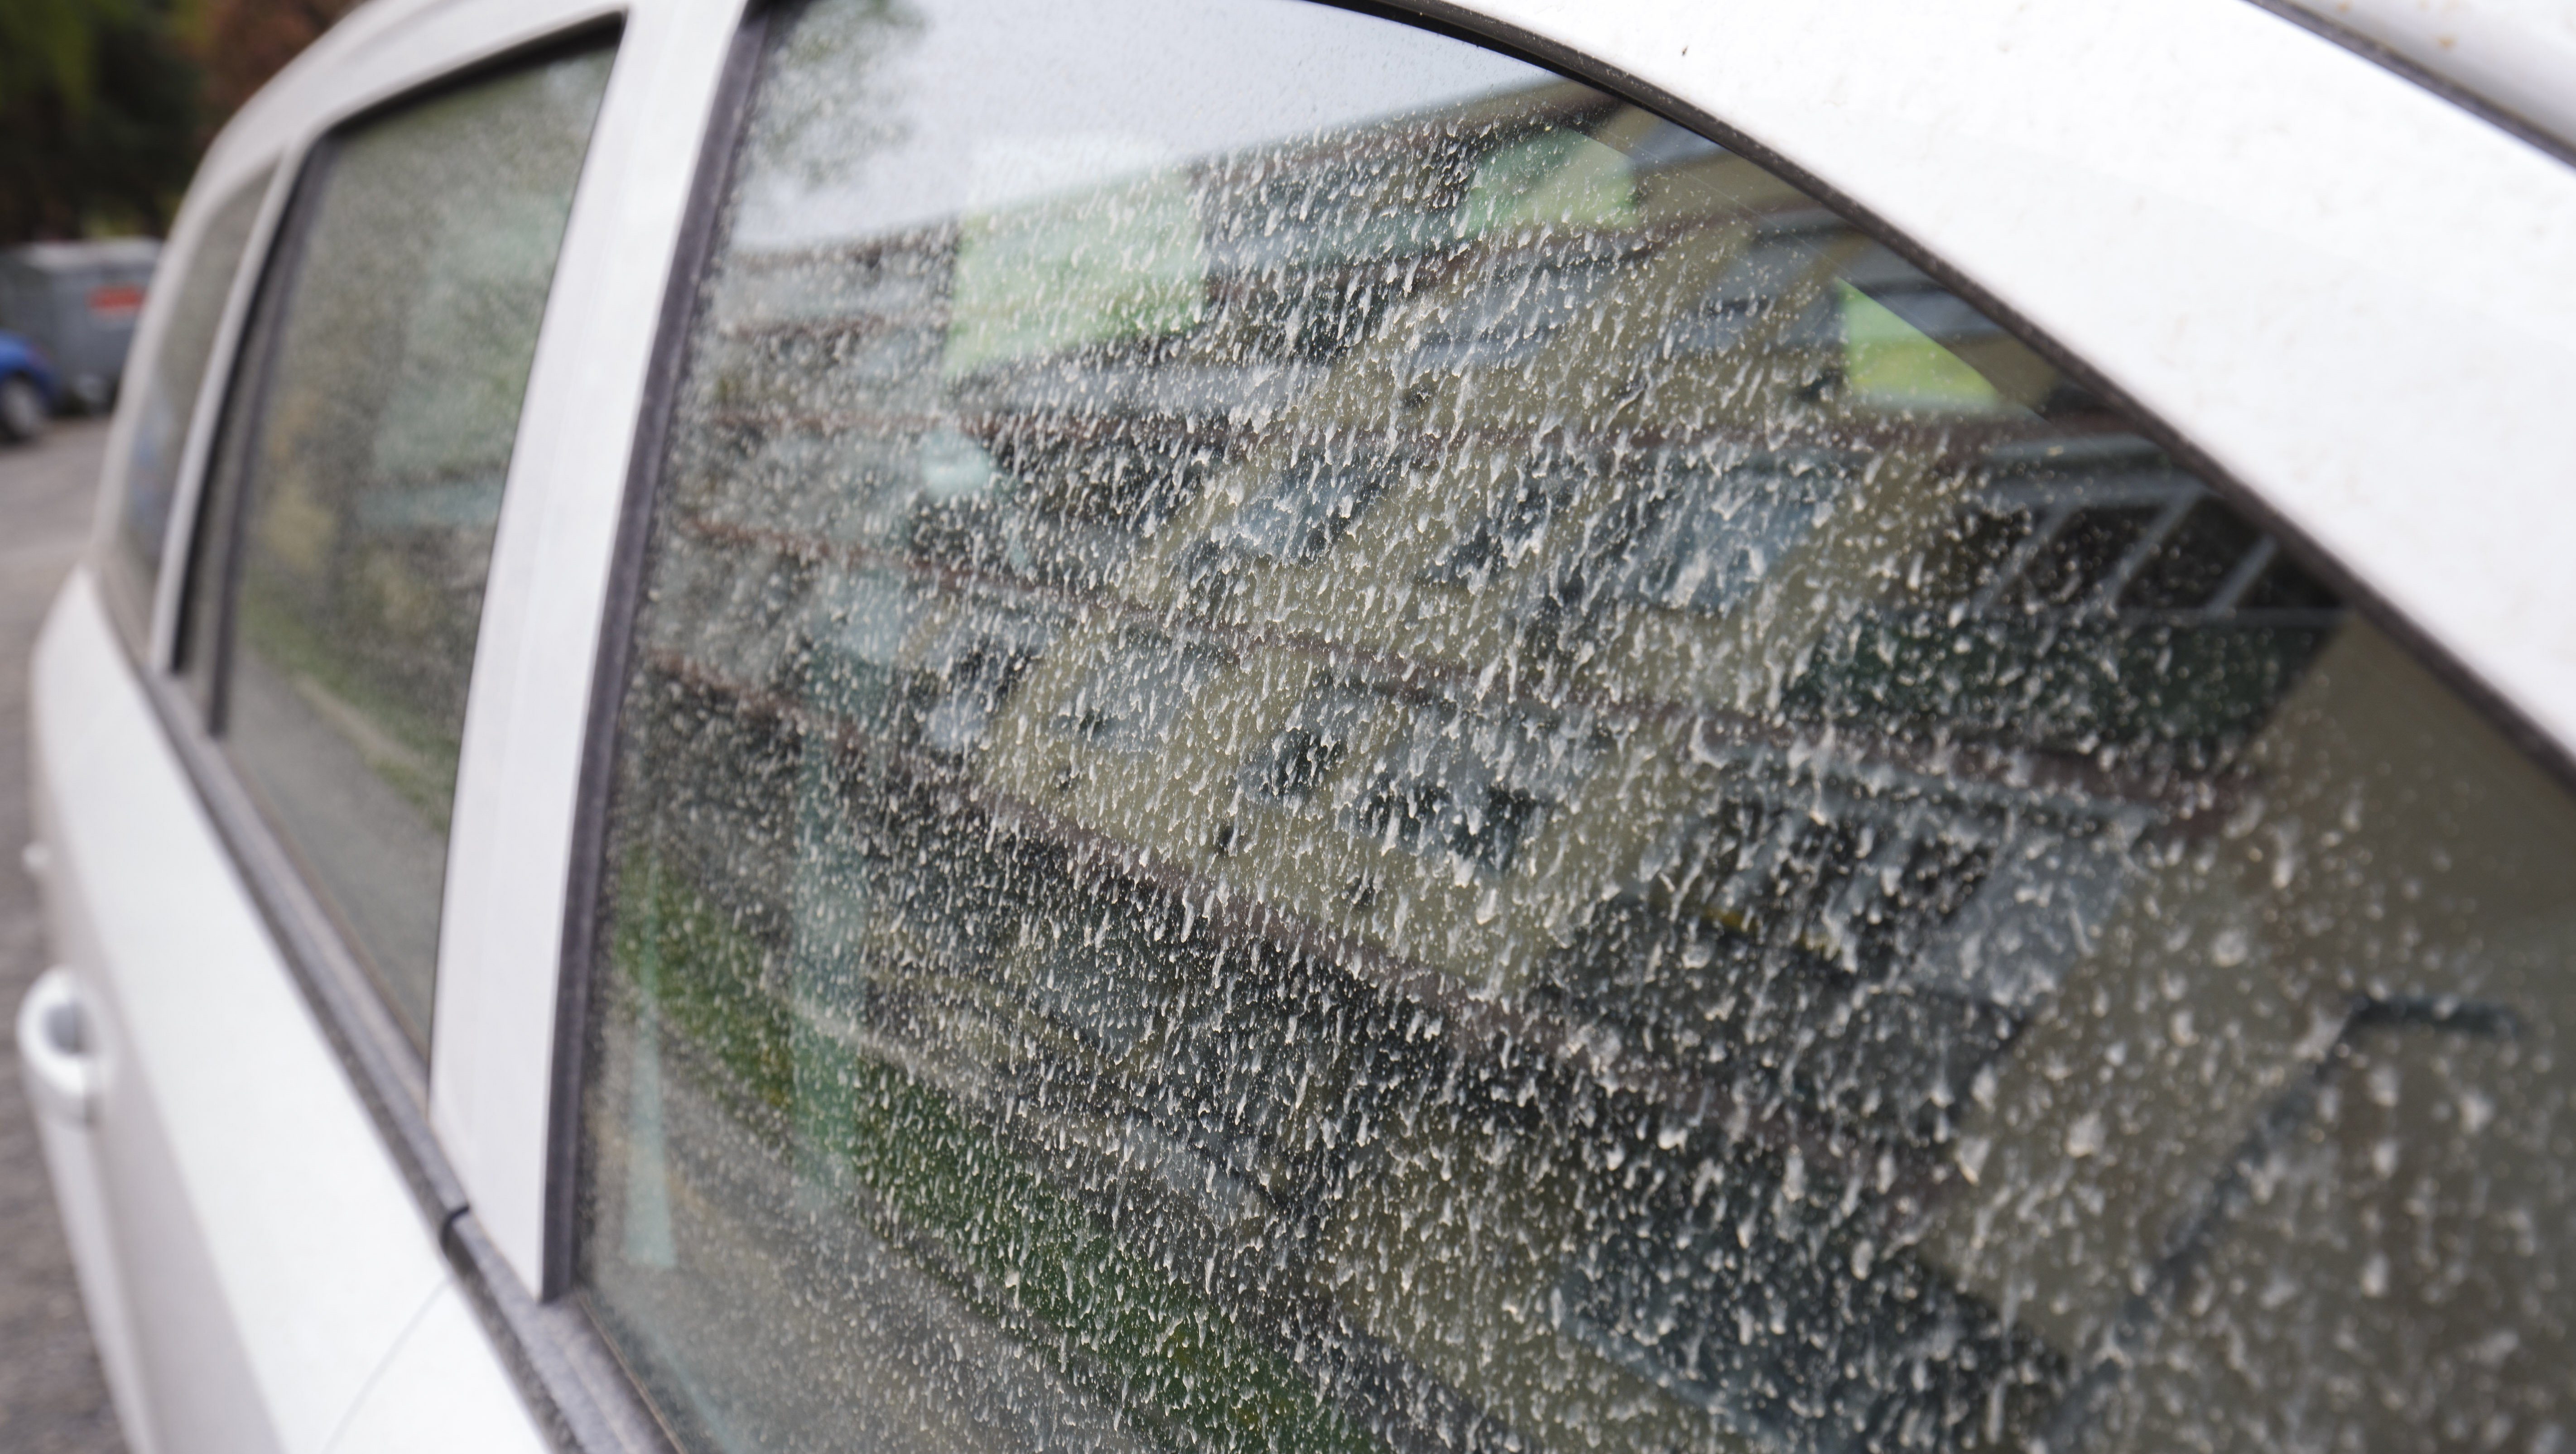 Ma már nem érdemes autót mosni, szerdán megint jön a saras eső